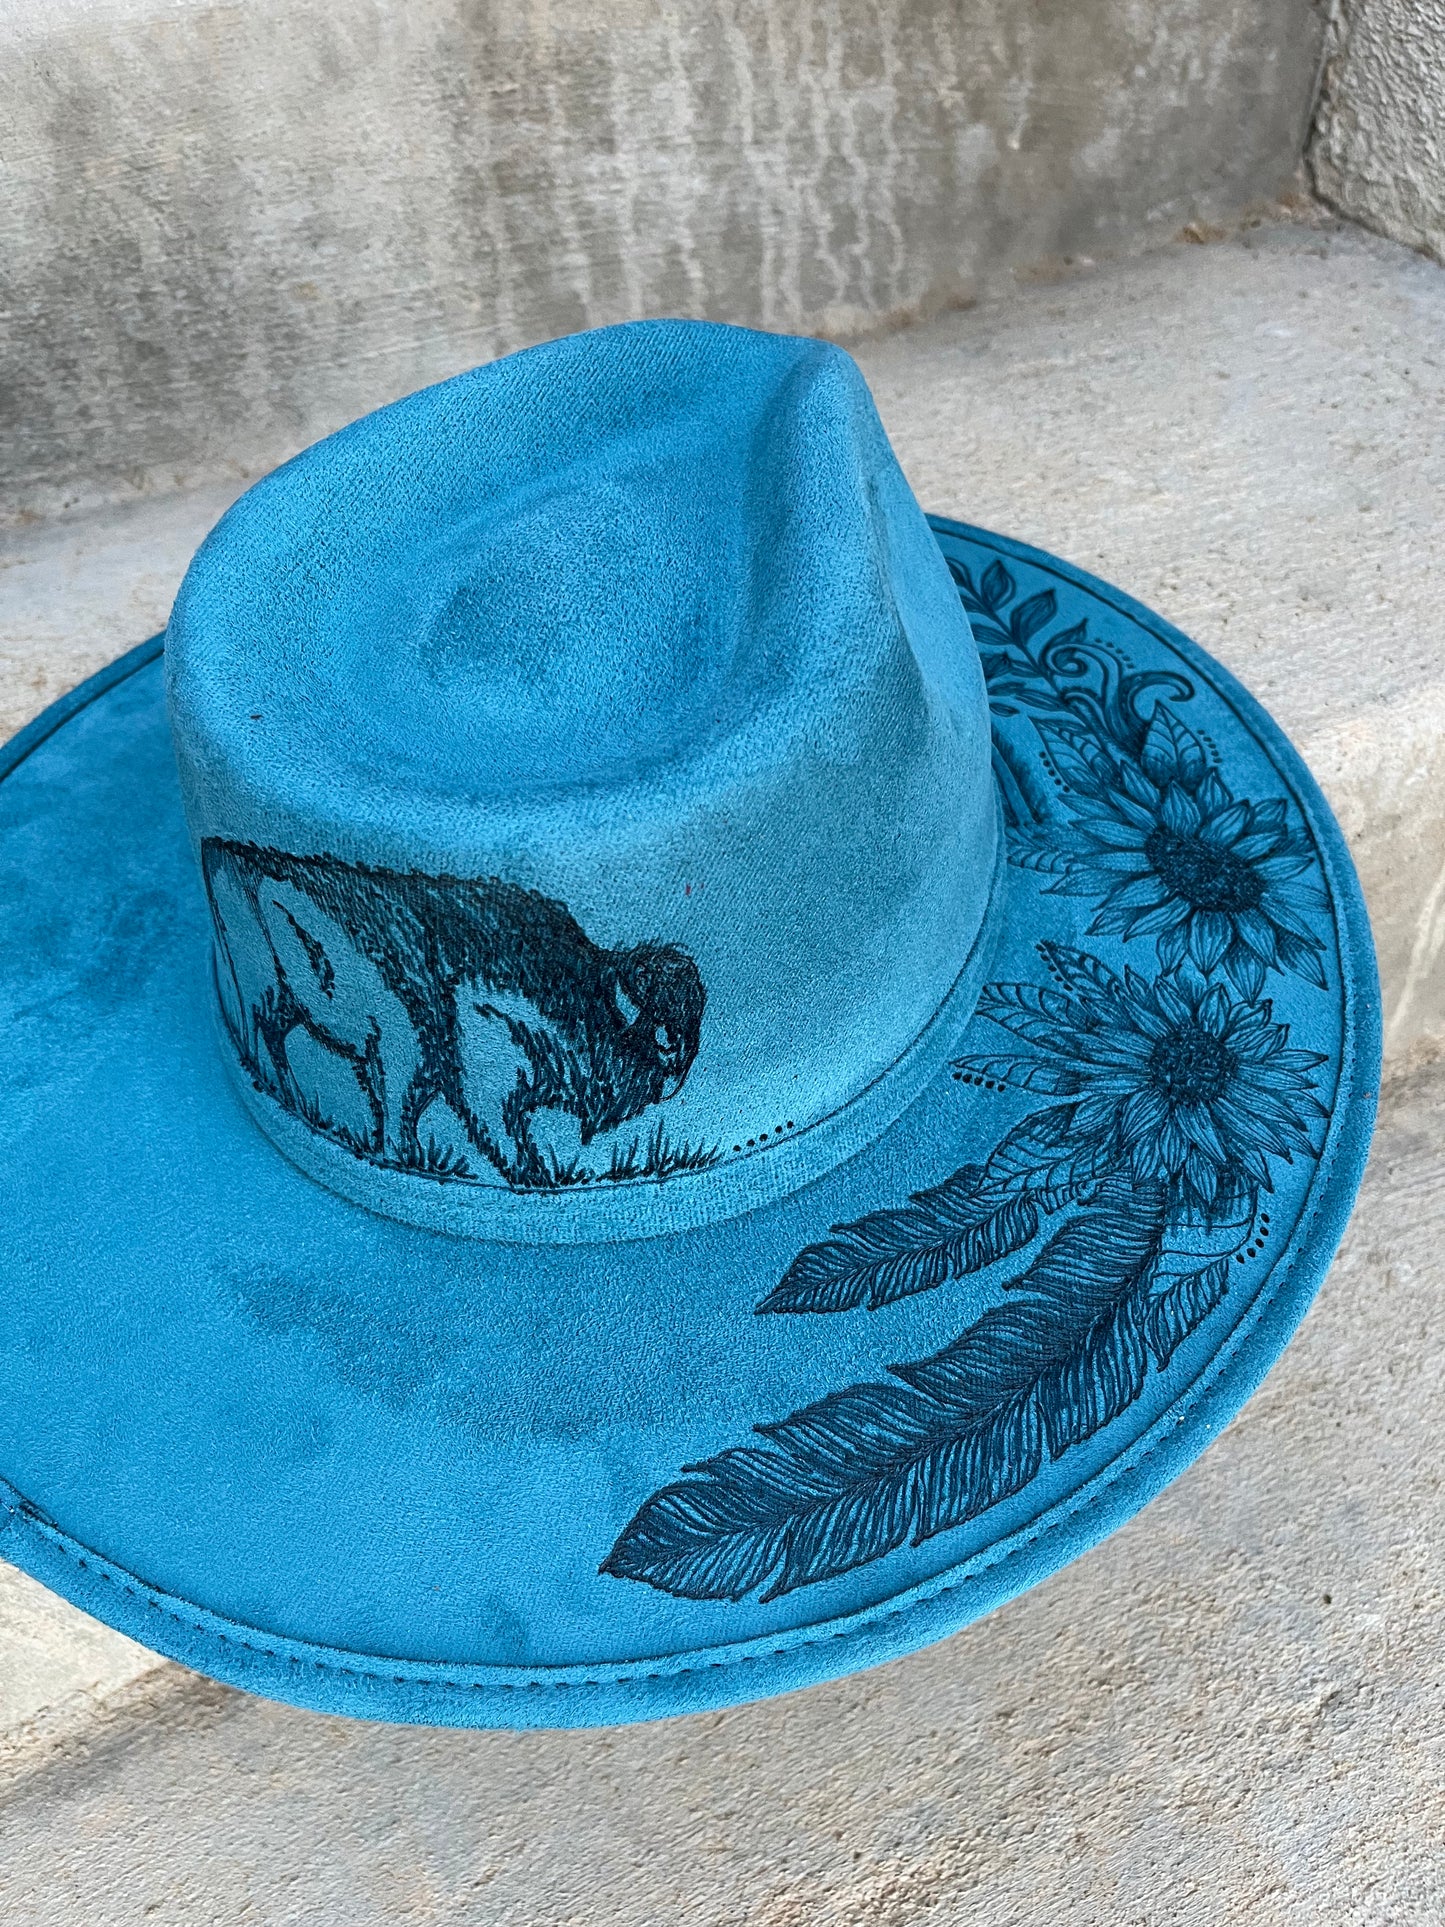 Blue Buffalo bison floral burned suede wide brim rancher hat